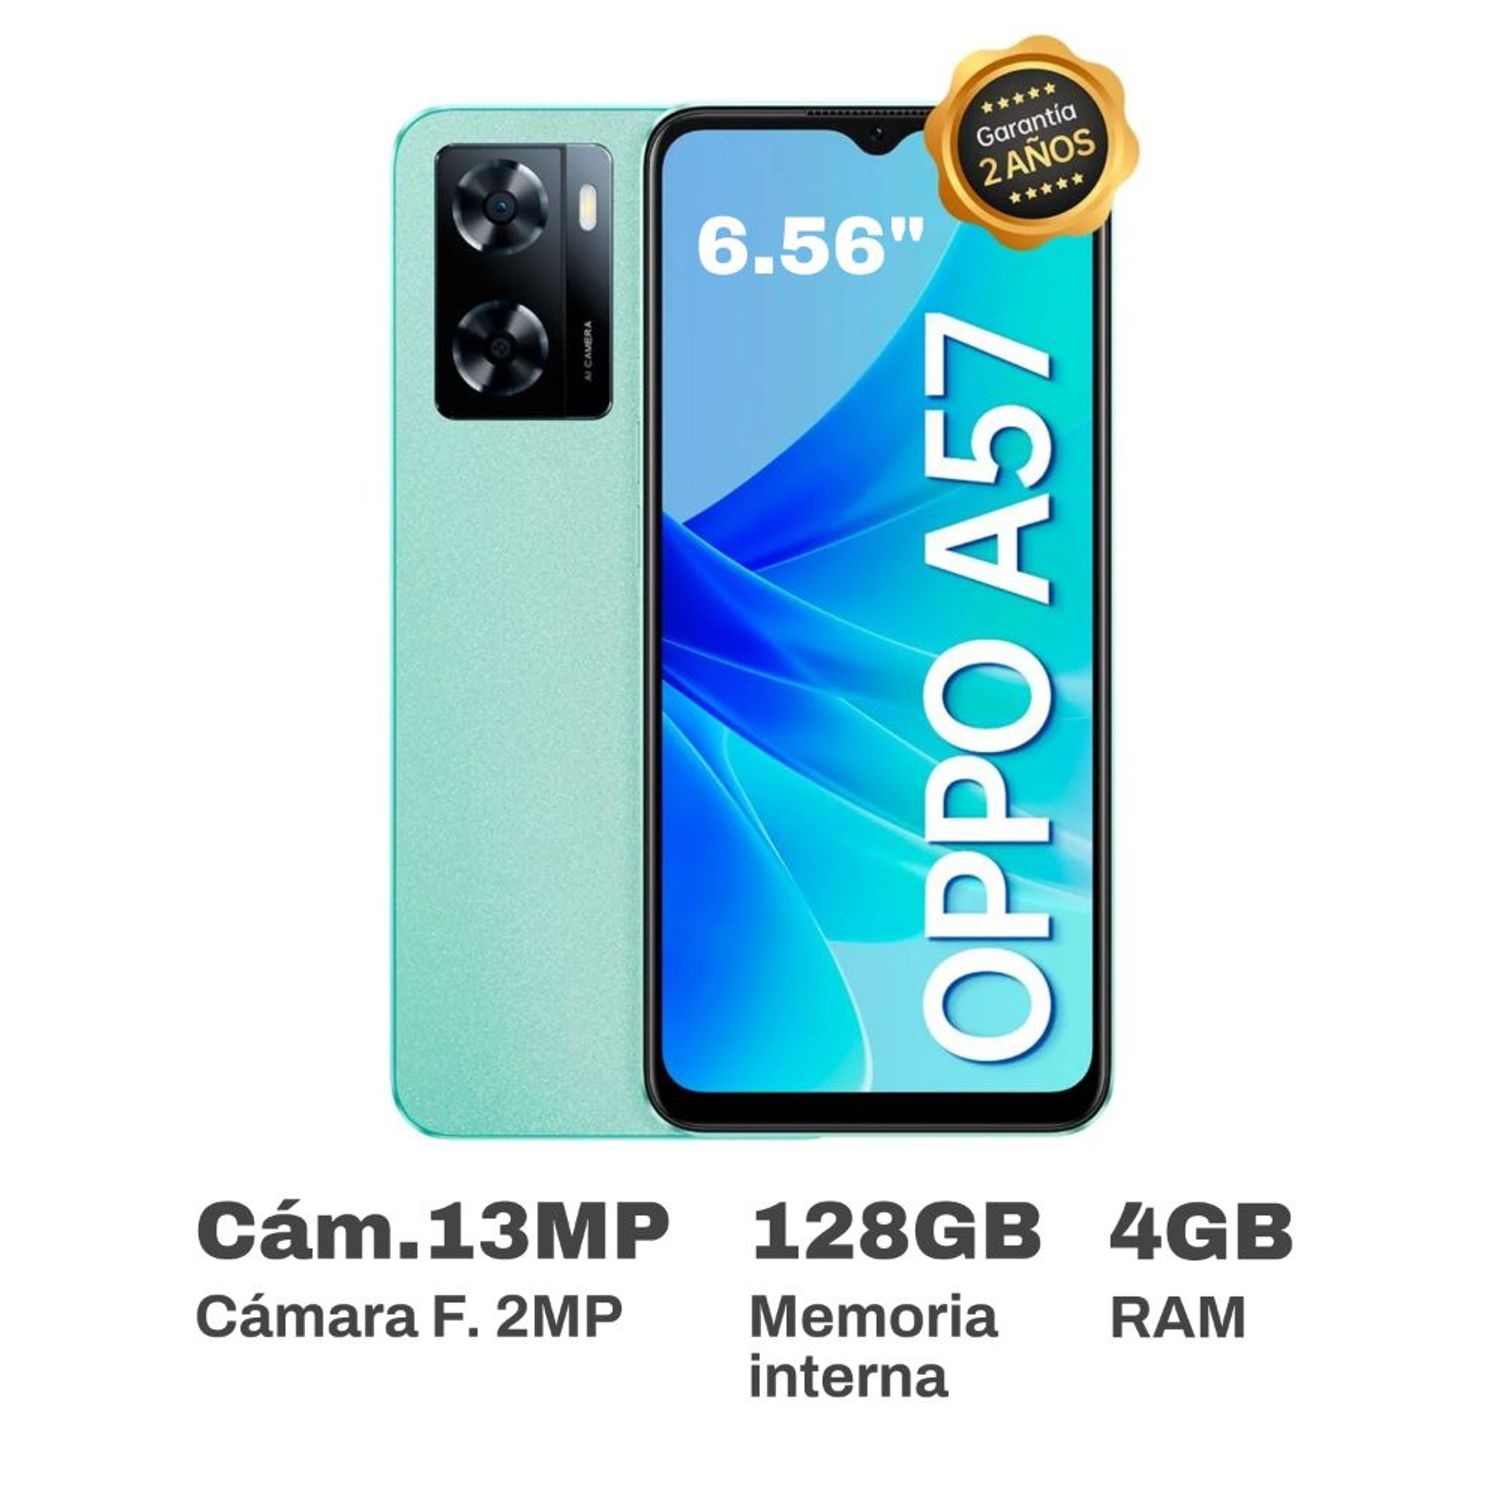 Combo OPPO A38 Negro de 128 GB + OPPO A77 Azul de 128 GB